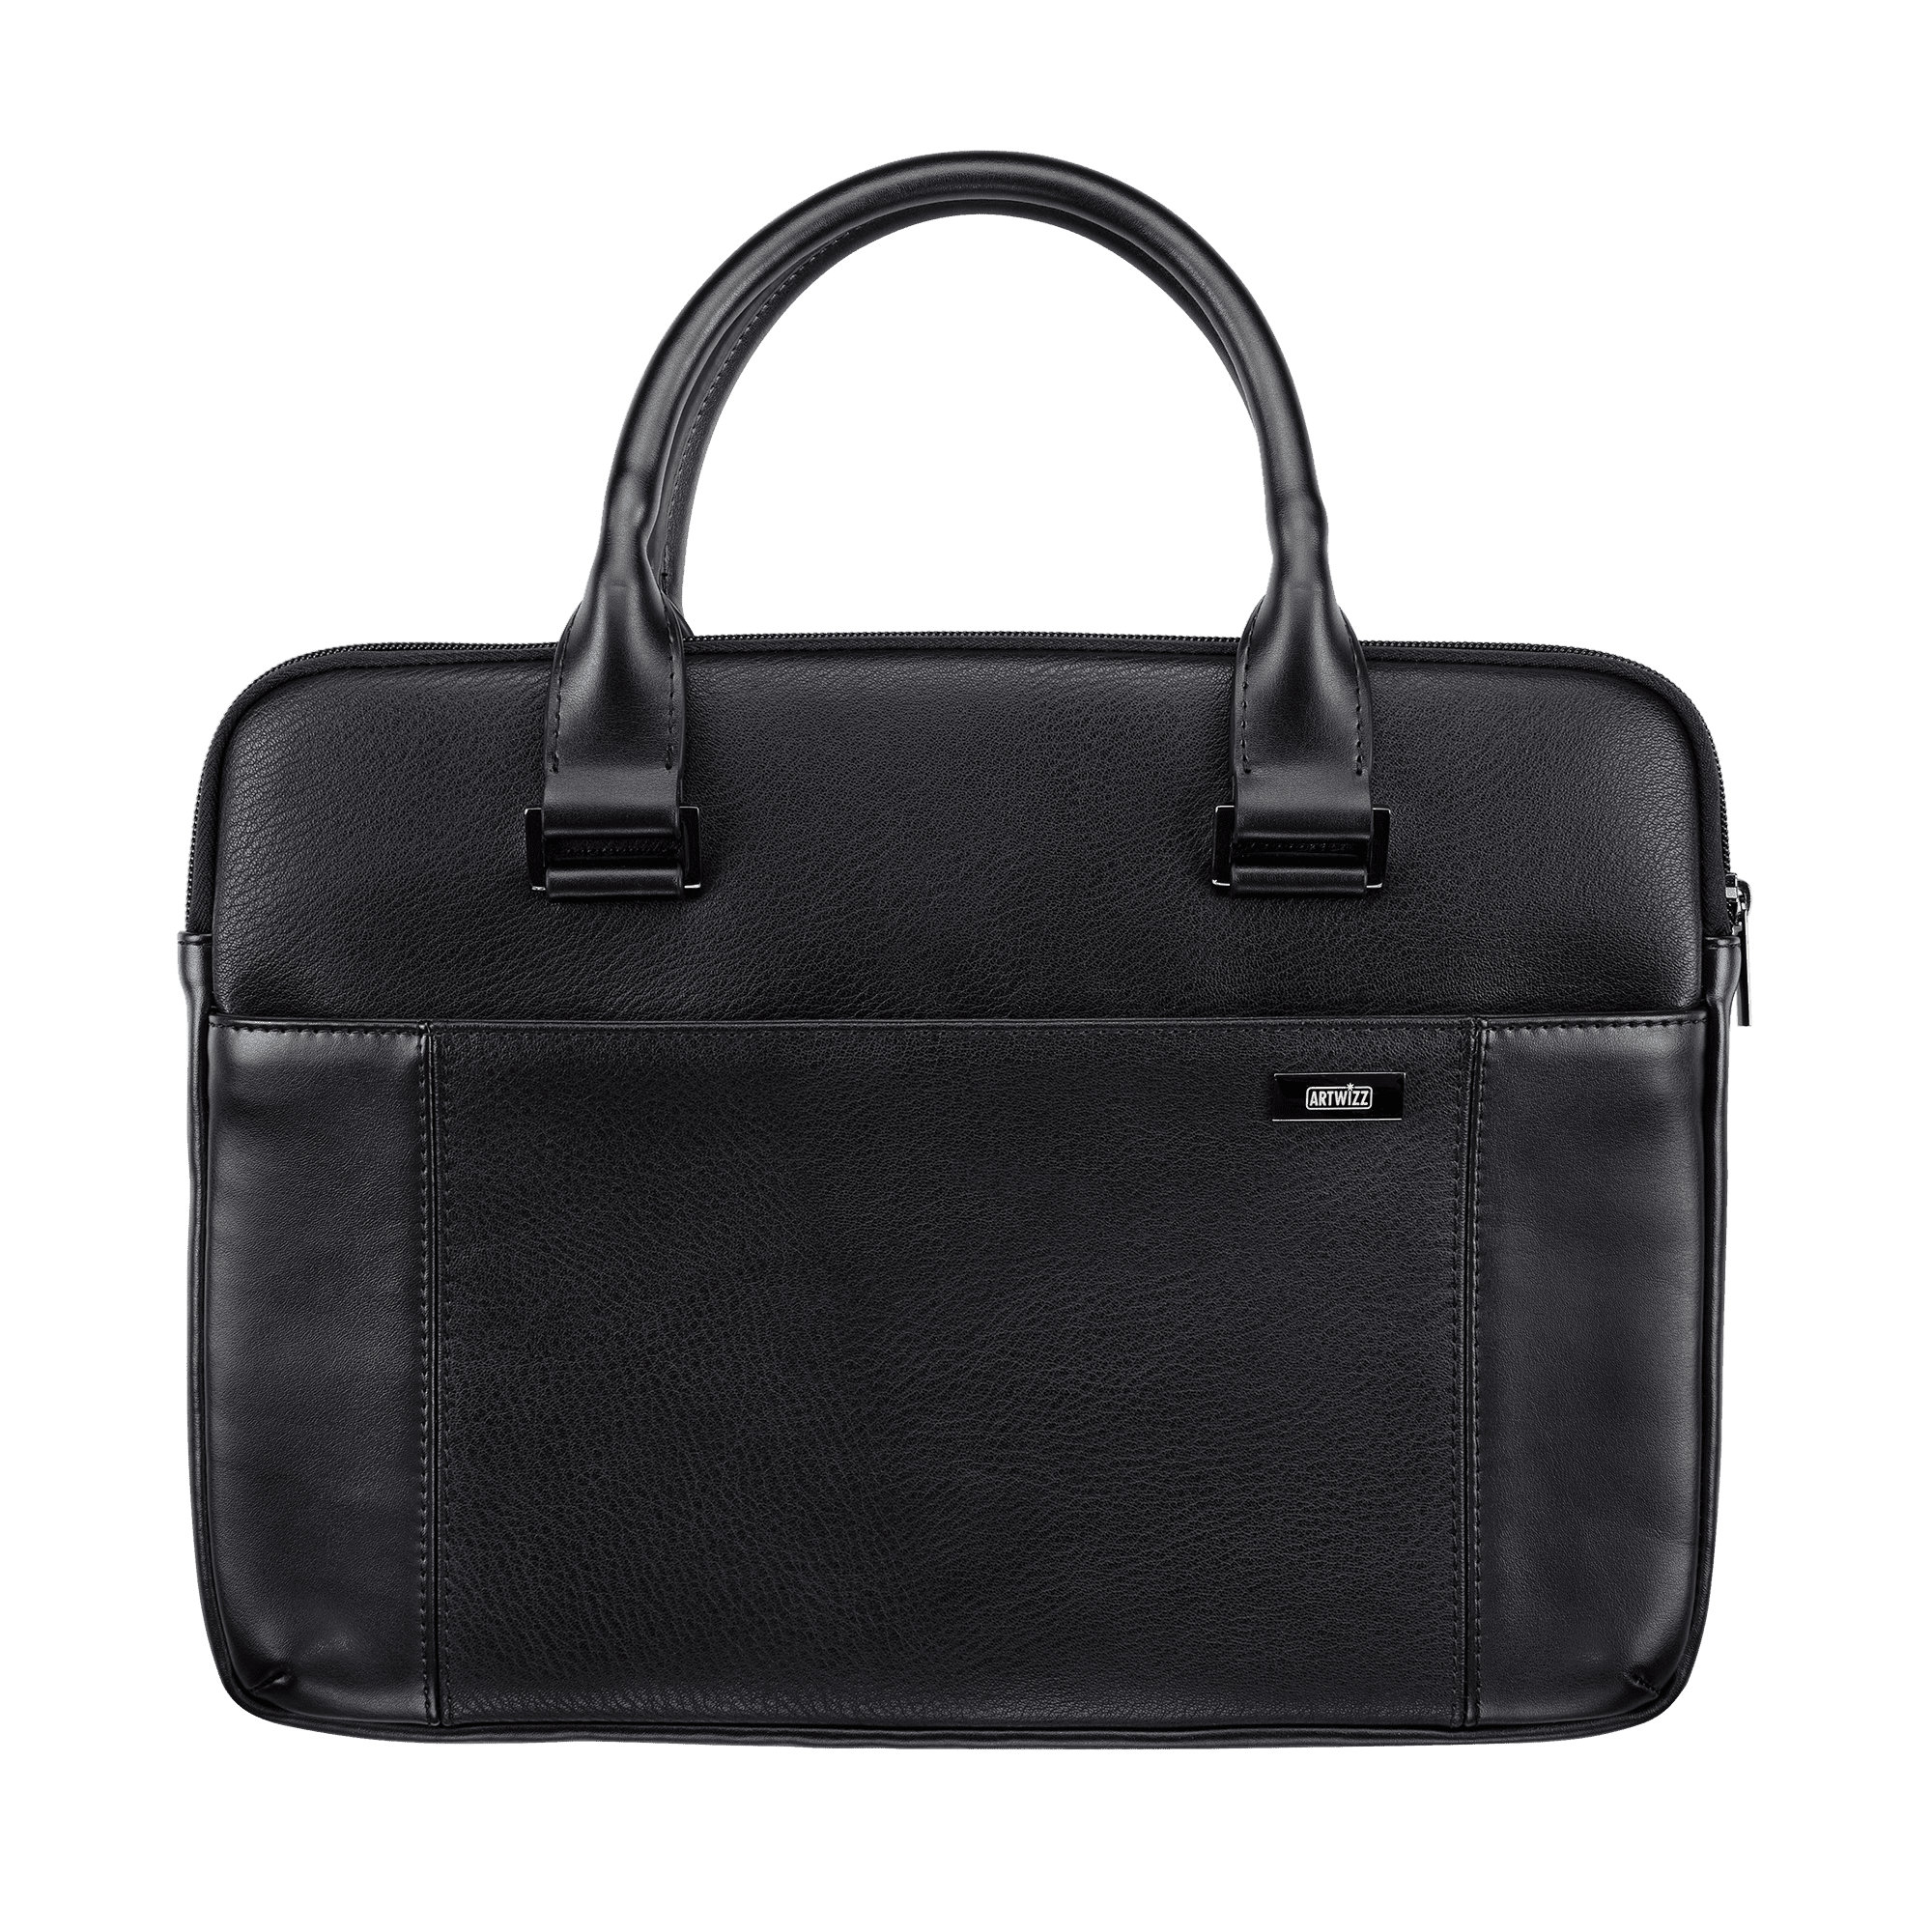 ARTWIZZ Leather / Bag 16 Schwarz Leder, Aktentasche für Tasche Notebook 15 Zoll für Apple